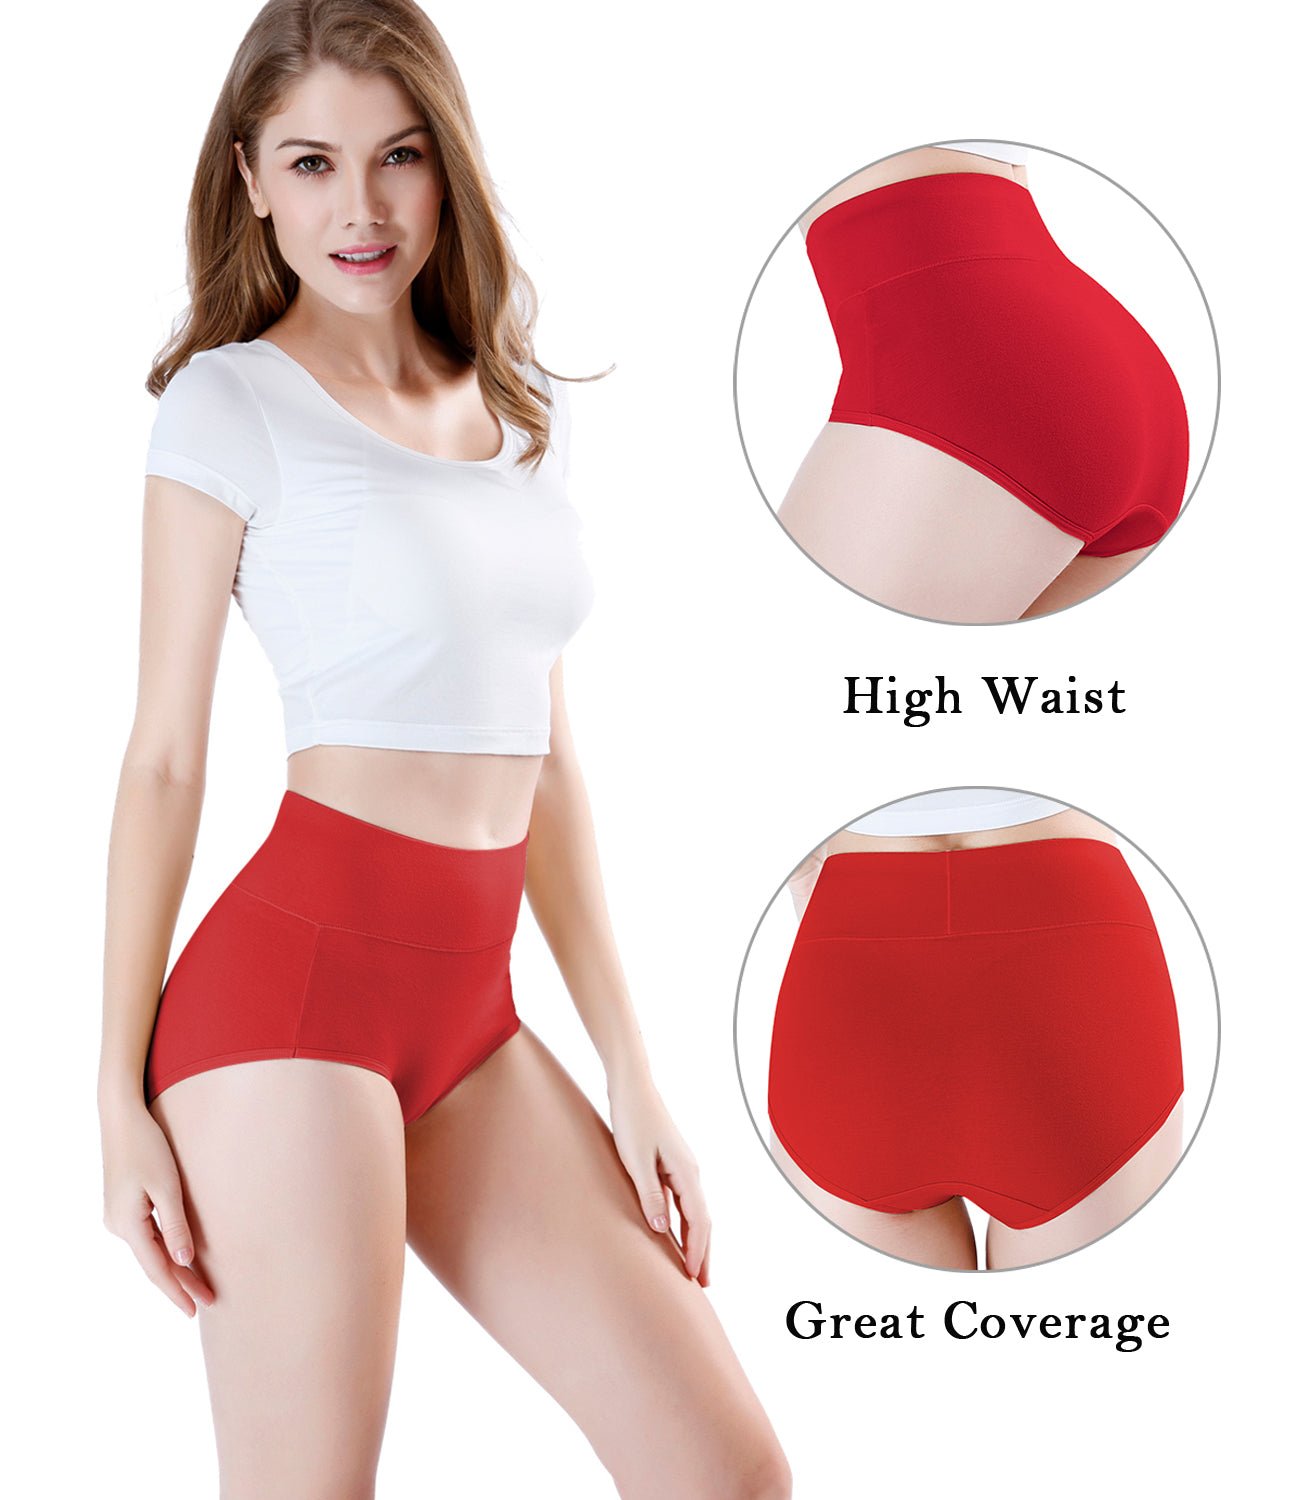 wirarpa Women’s Super High Waisted Cotton Briefs Underwear 5 Pack - Wirarpa Apparel, Inc.